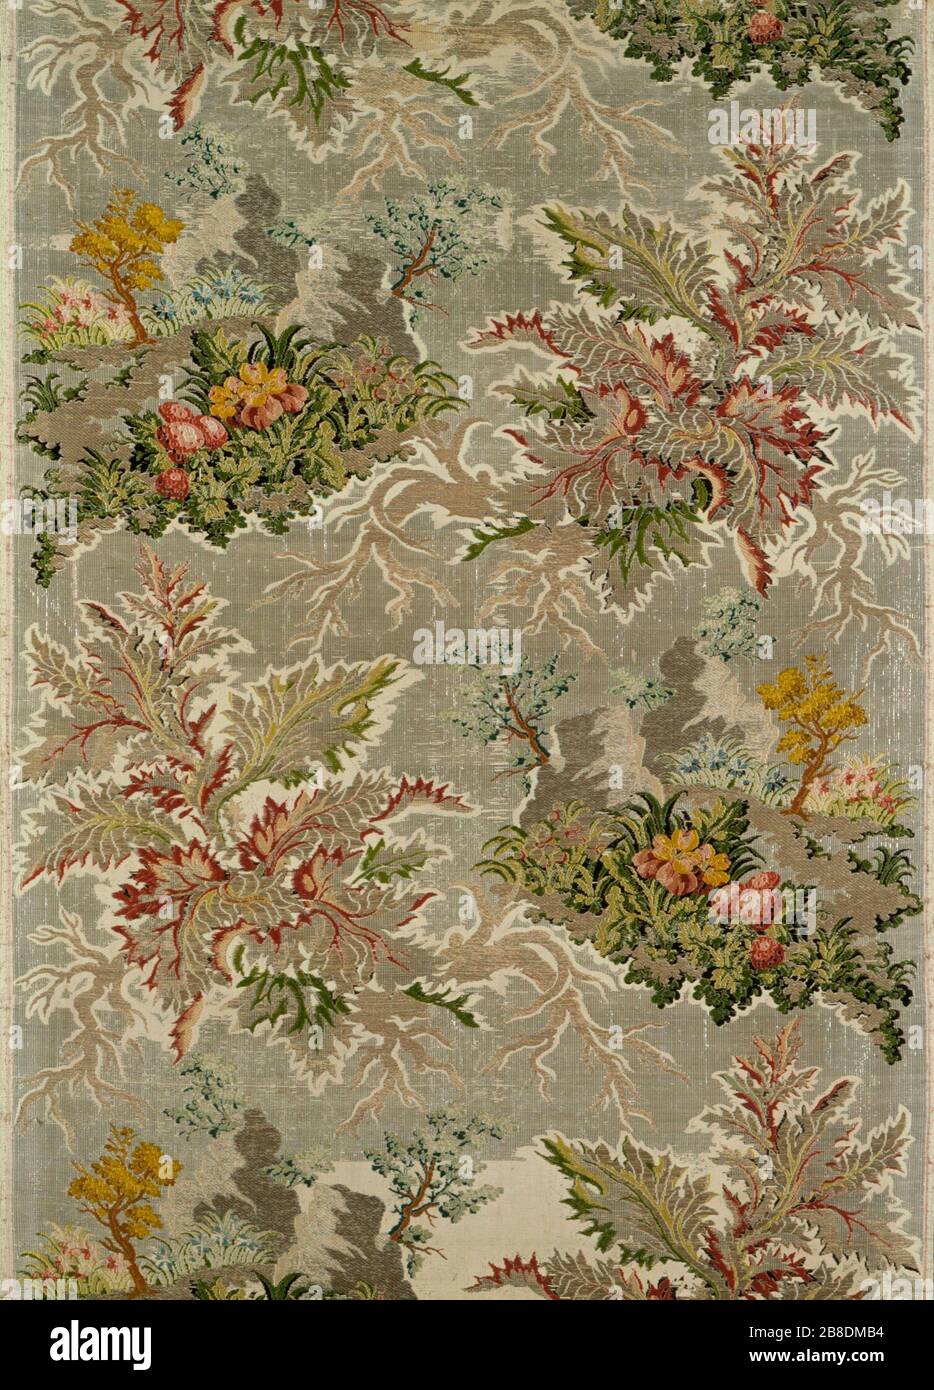 Dress o suministro de tejido textil, Italia o Francia. 30 de brocado de  seda de 1/2 x 21 3/4; en inglés: Italia, a comienzos del siglo XVIII,  brocaded textiles de seda; tierra